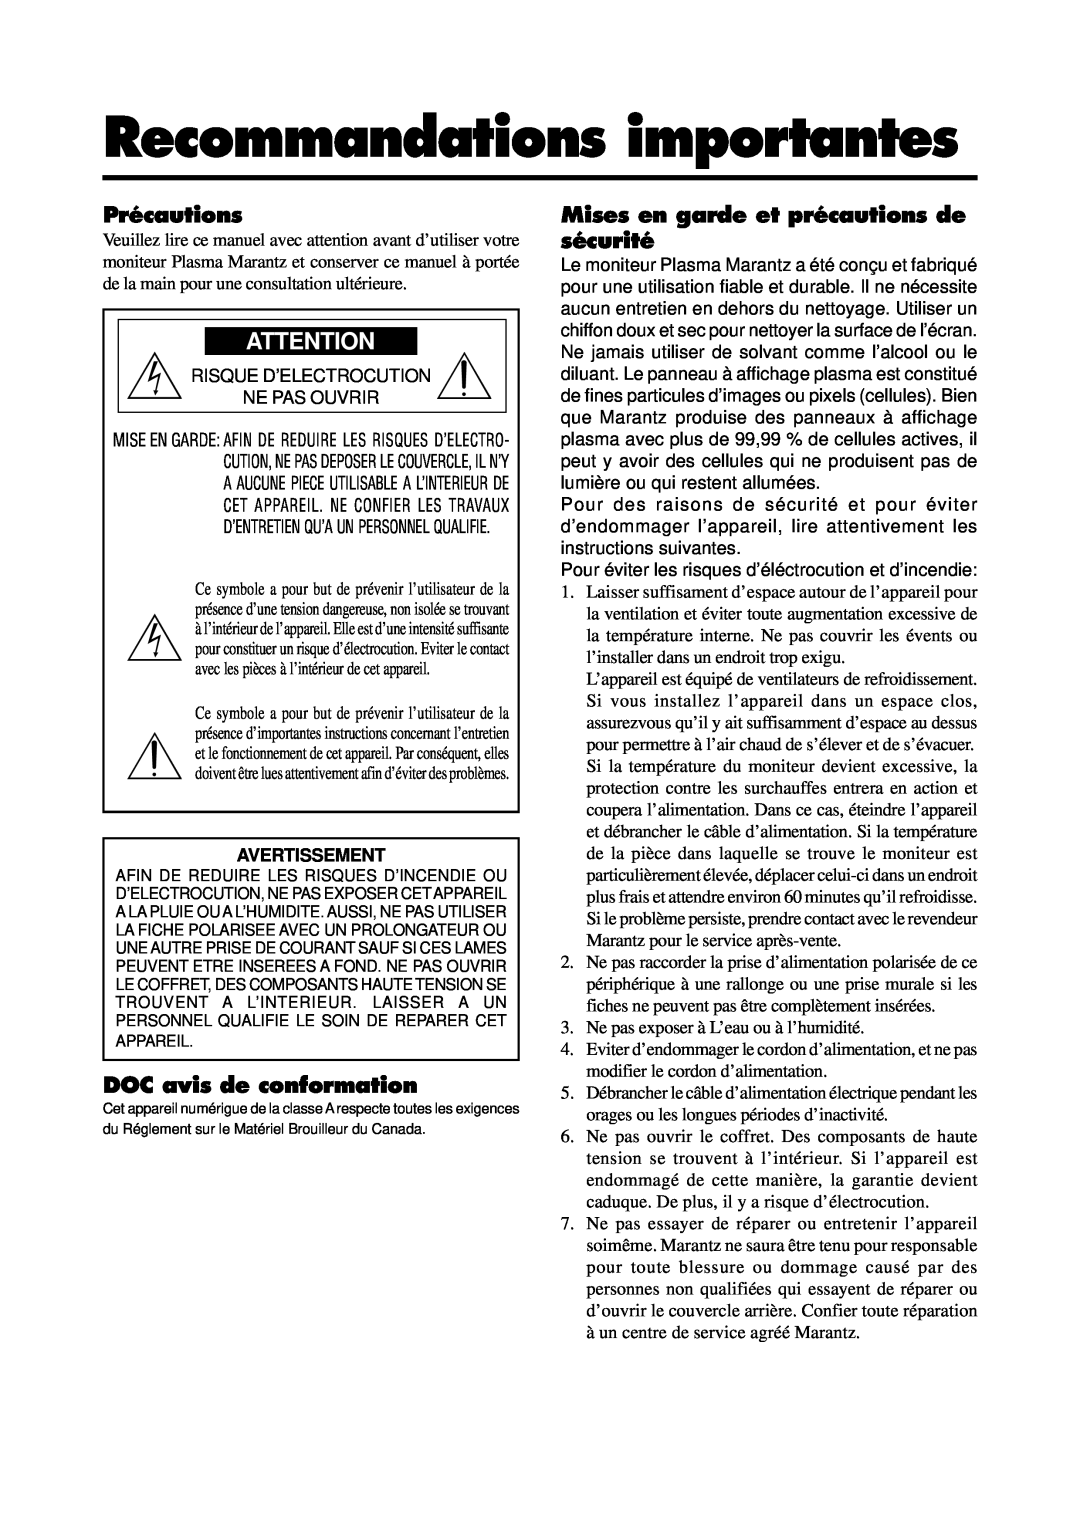 Marantz PD5020D manual Recommandations importantes, Précautions, DOC avis de conformation, Avertissement 